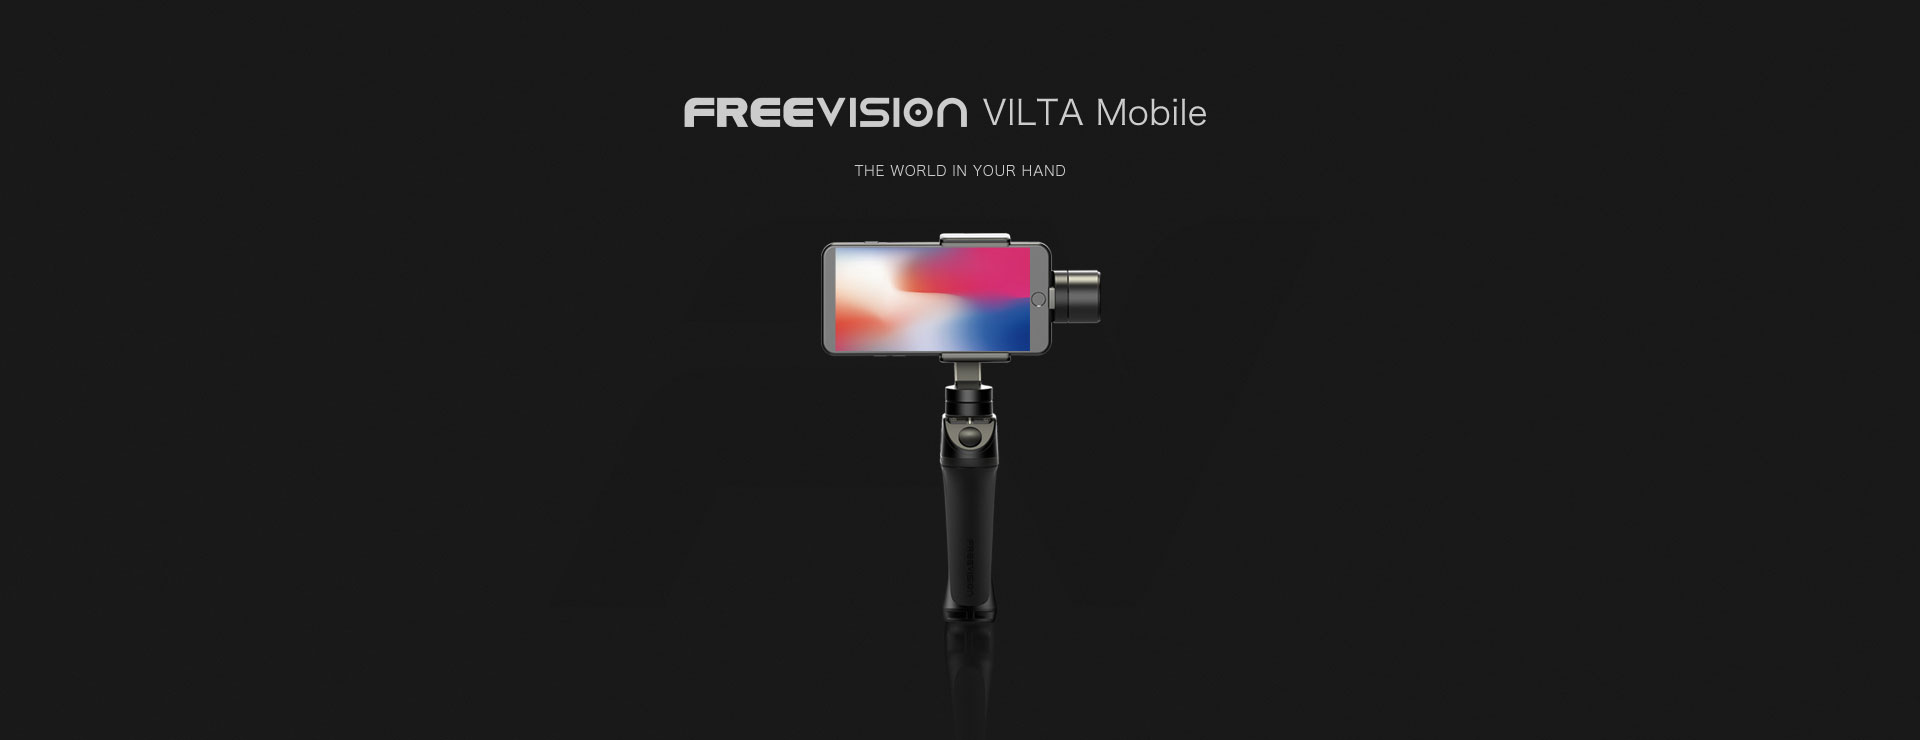 freevision vilta m